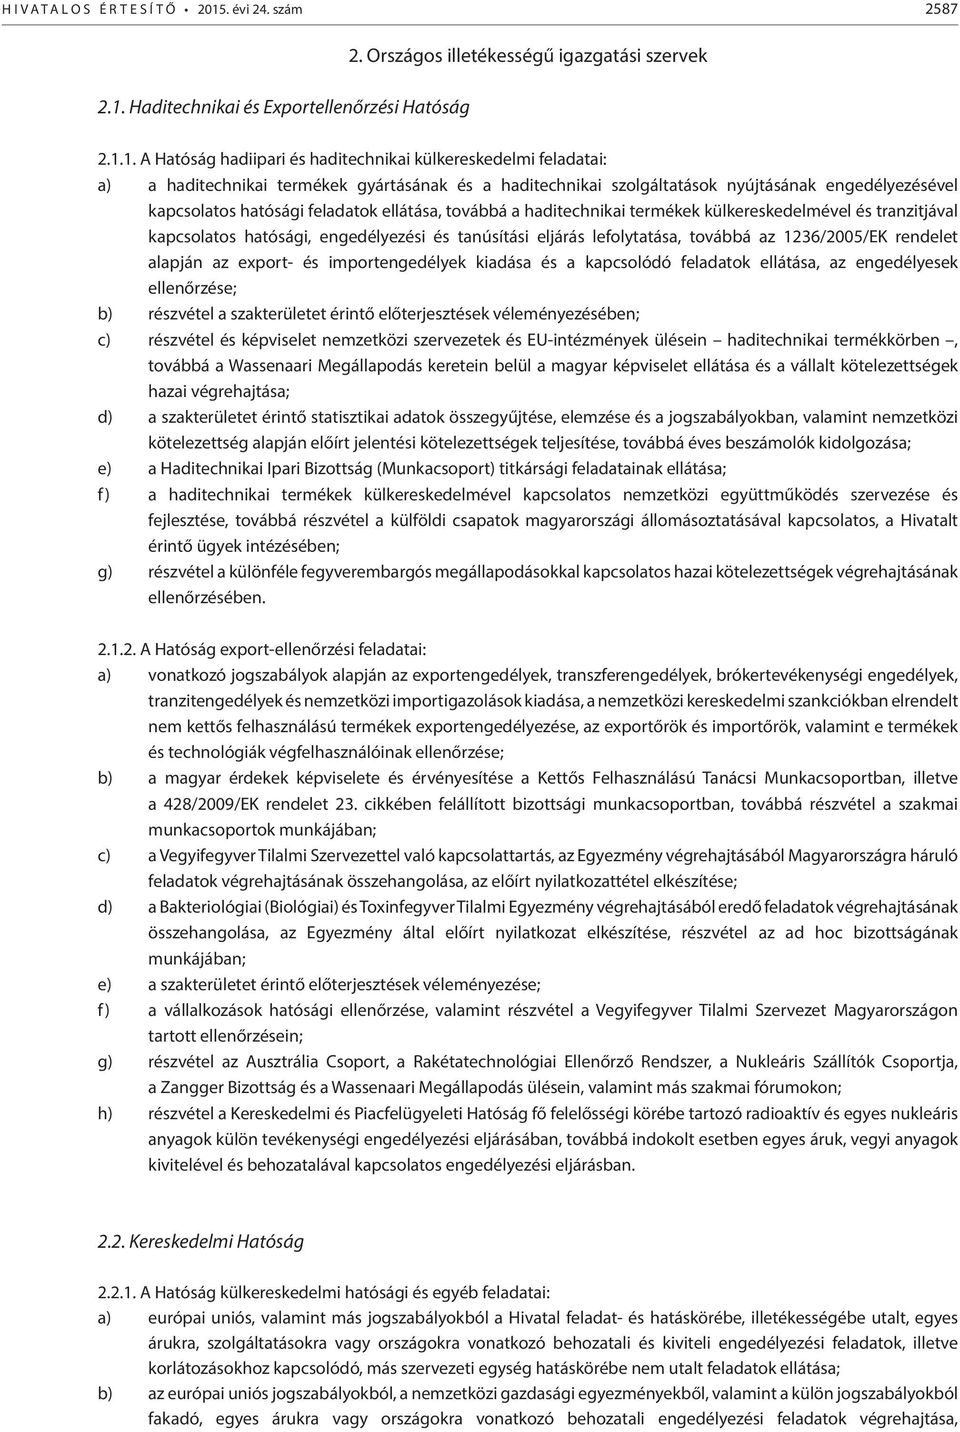 Haditechnikai és Exportellenőrzési Hatóság 2. Országos illetékességű igazgatási szervek 2.1.